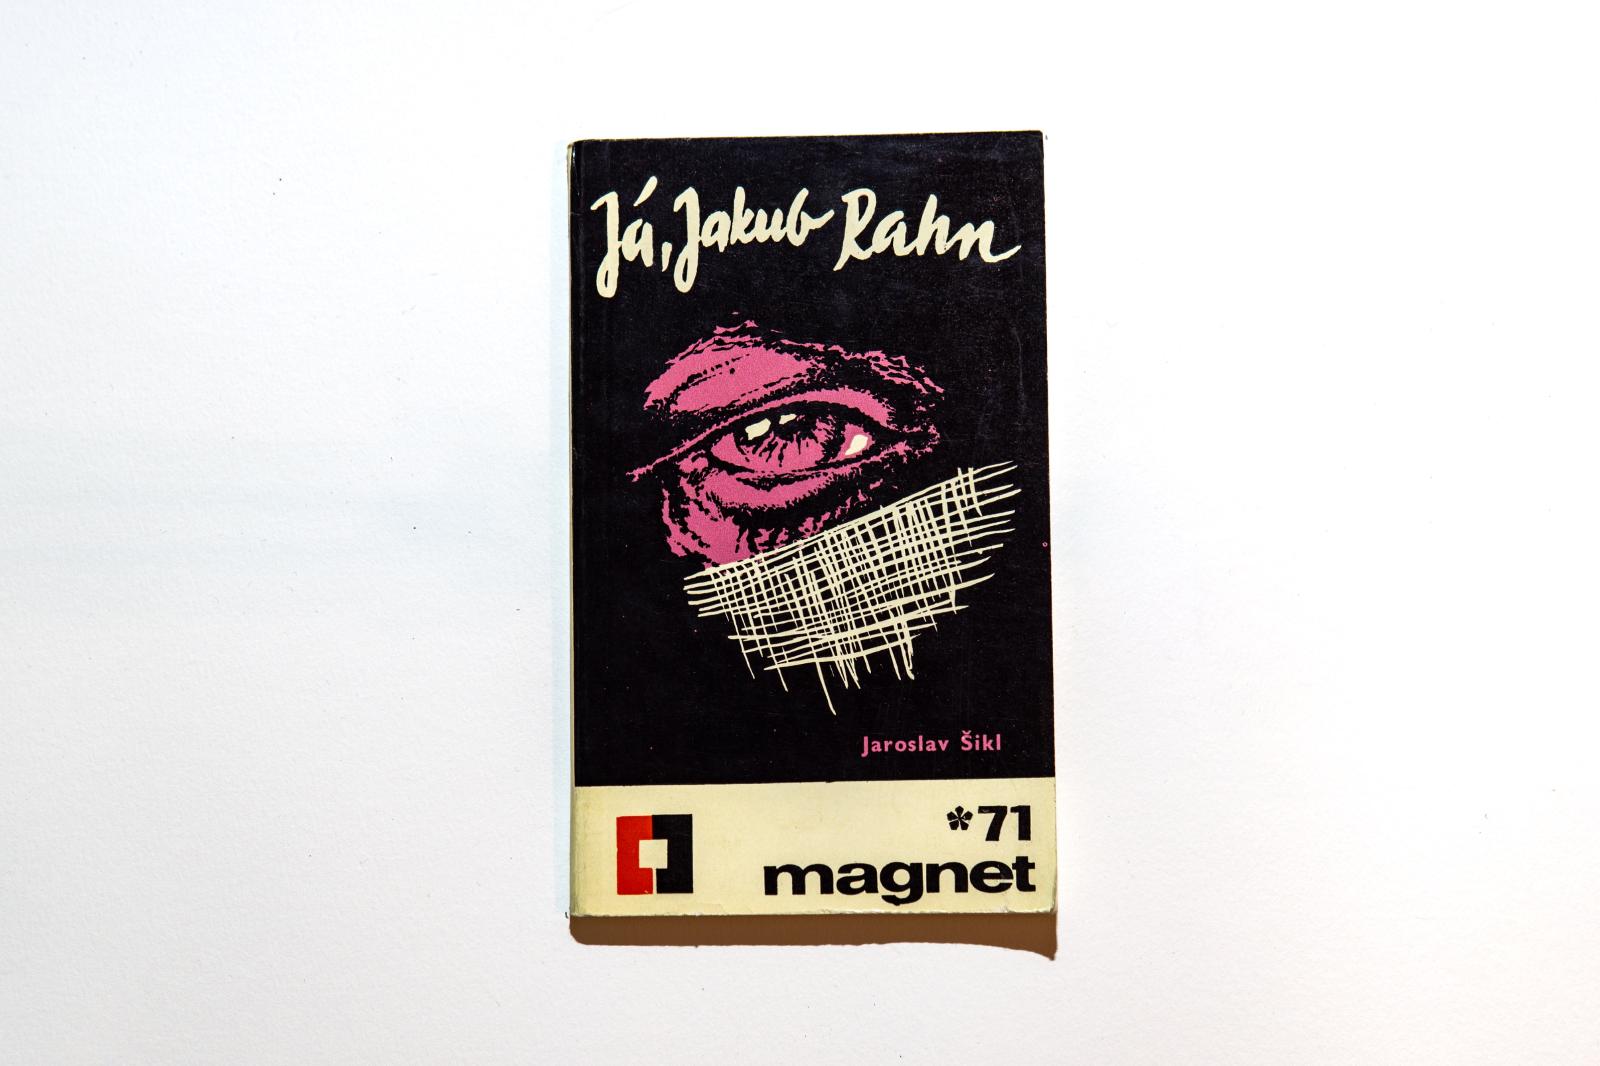 Ja, Jakub Rahn Jaroslav Šikol Magnet 1971 1 - Knihy a časopisy